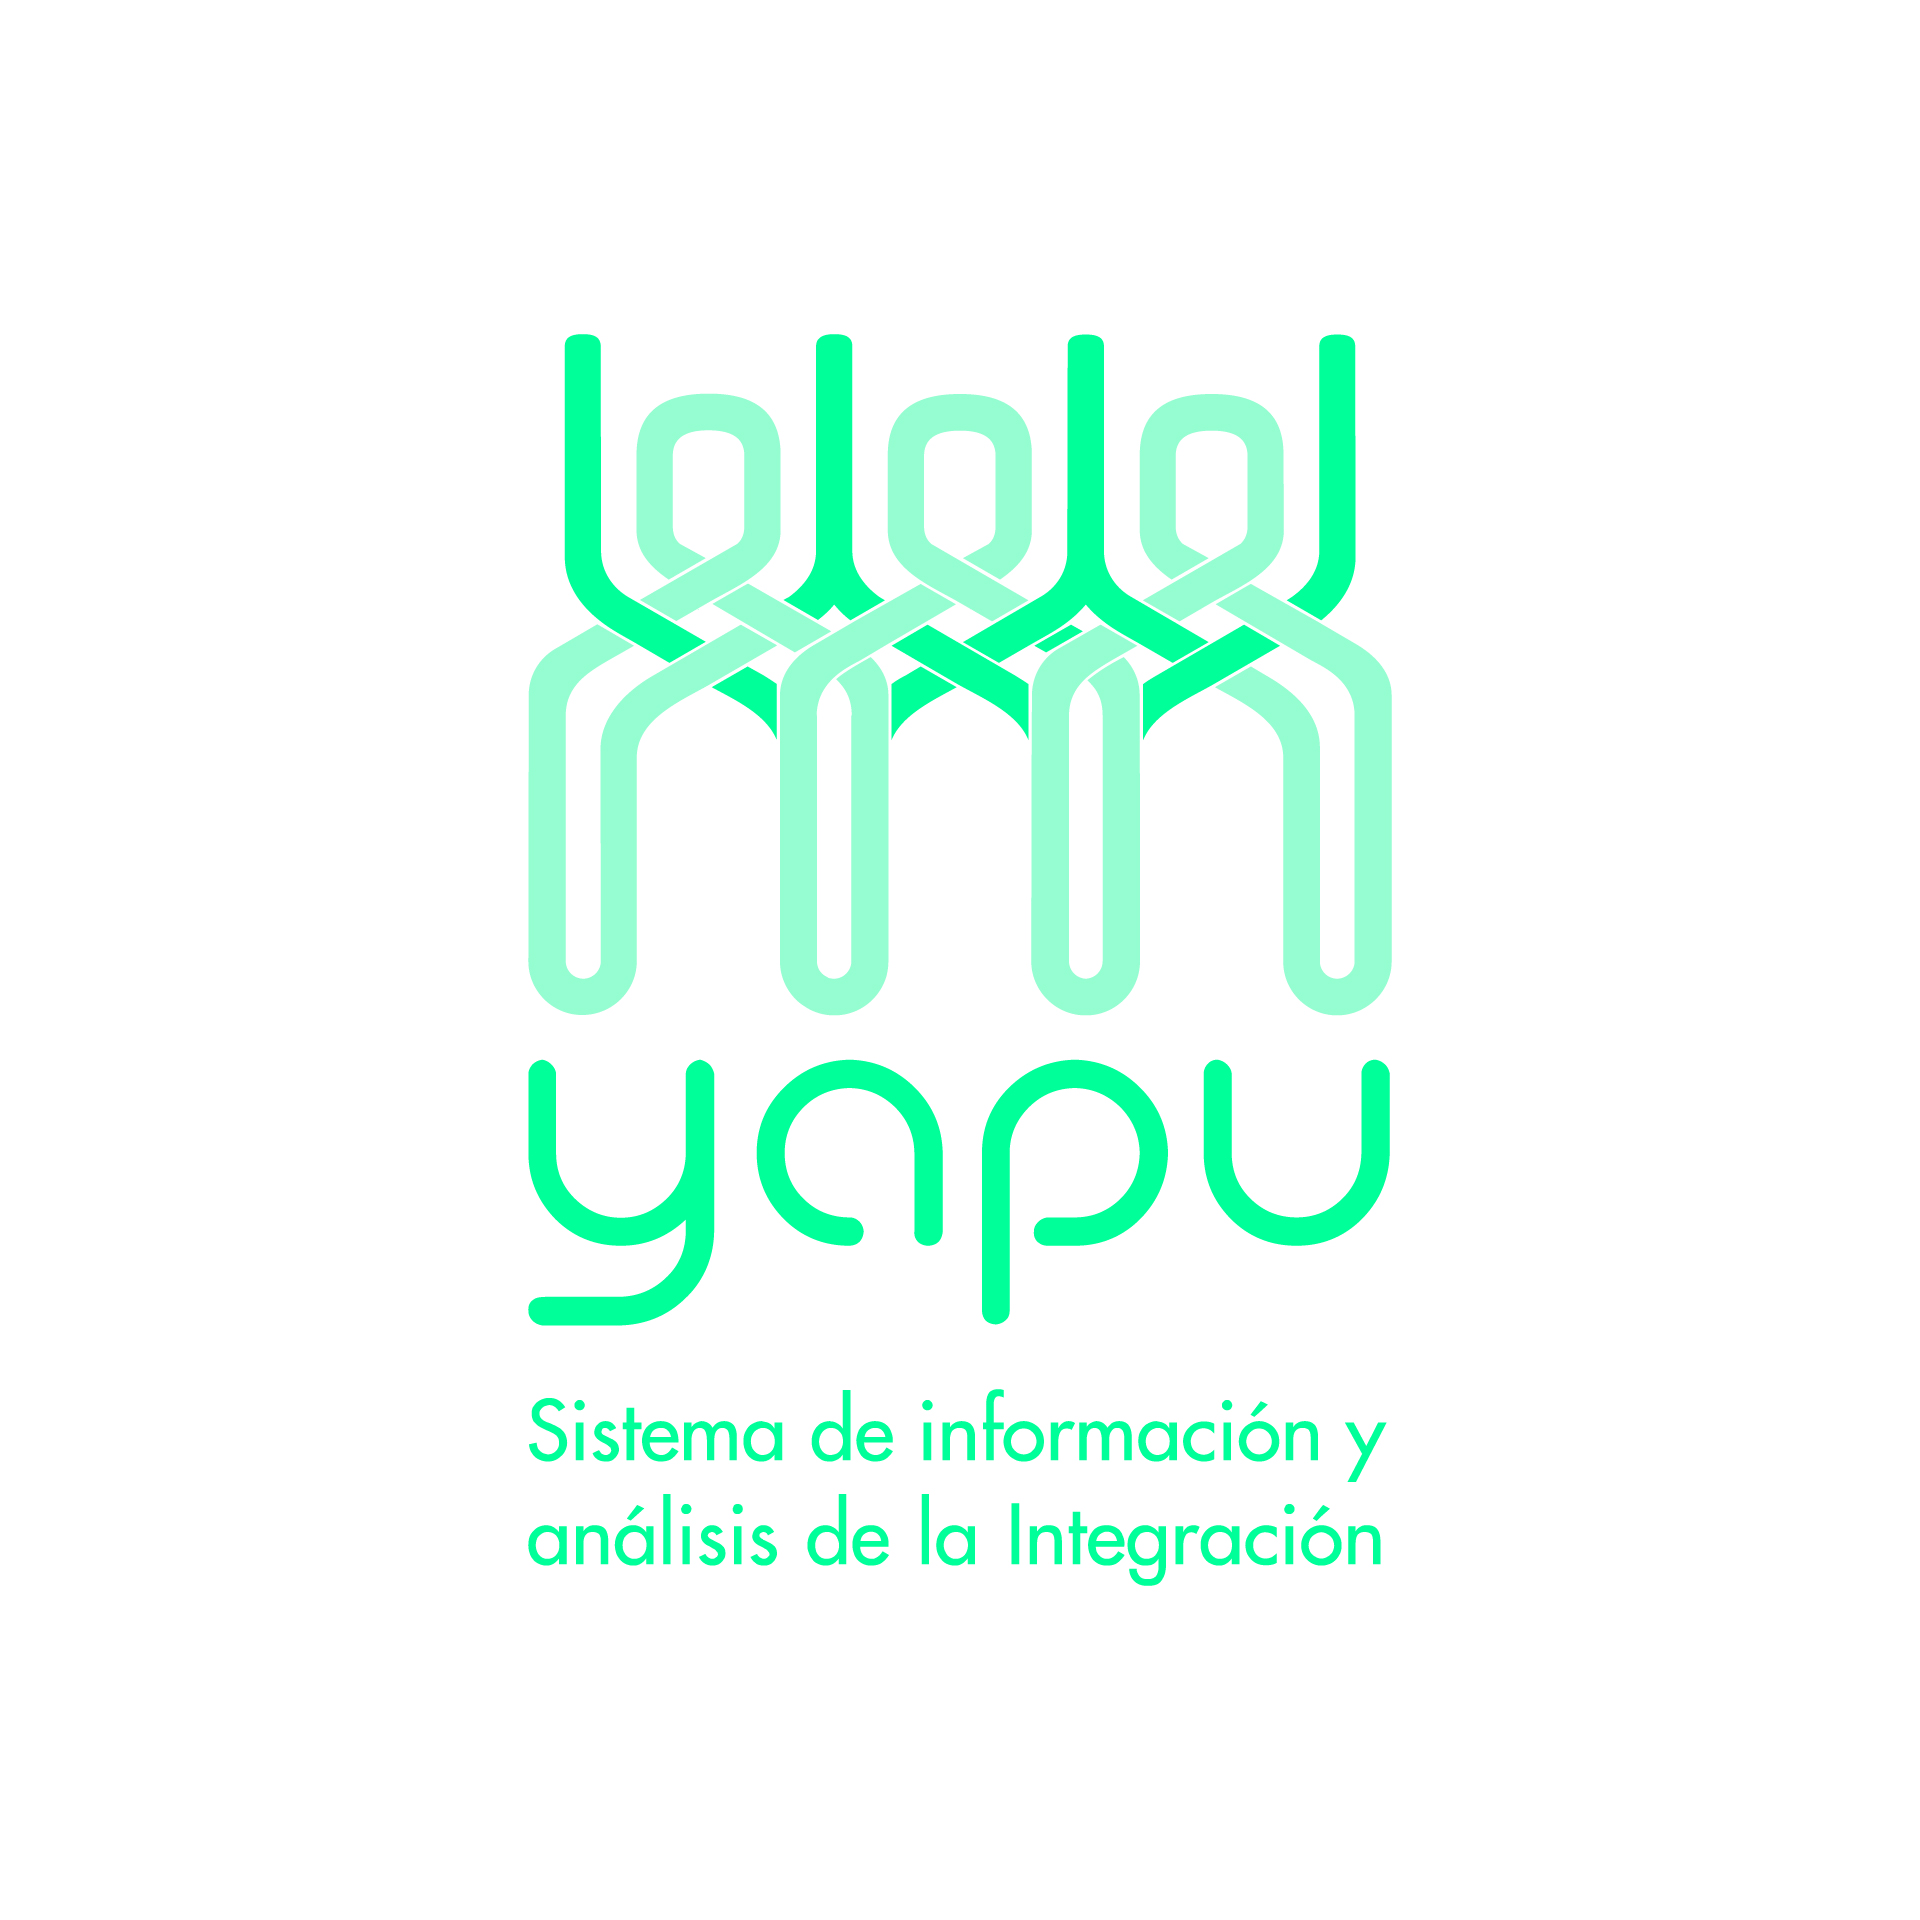 Diseño de Identidad Visual y Logotipo para la marca Yapu